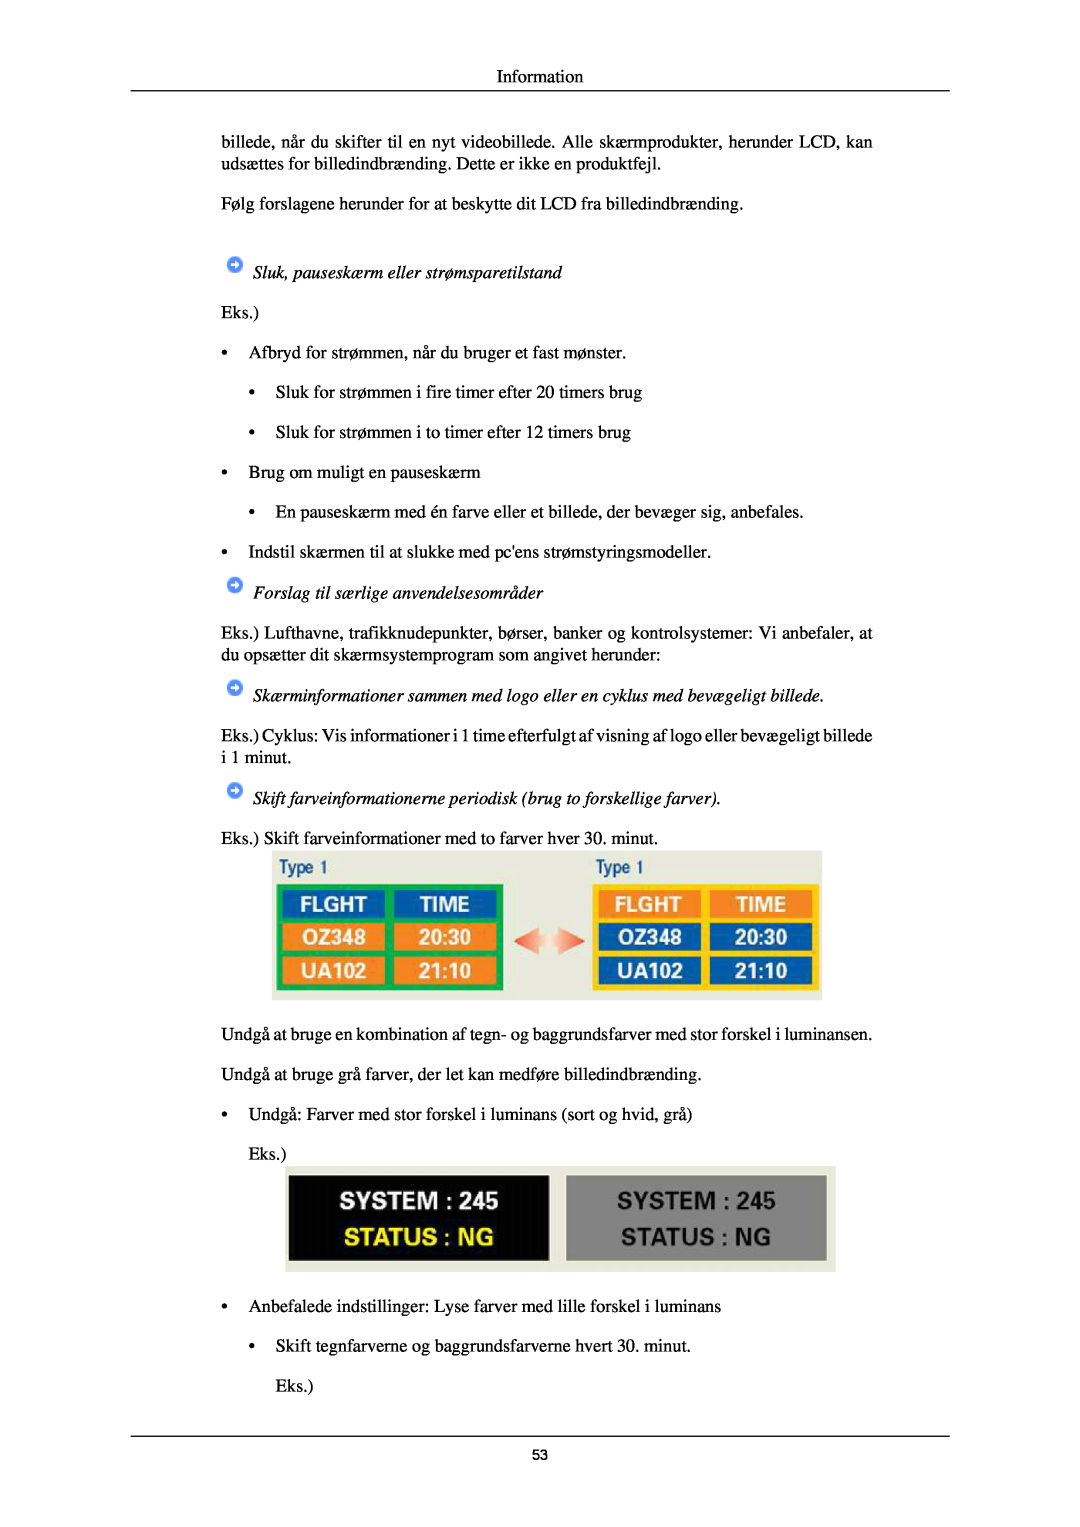 Samsung LS24CMKKFV/EN manual Sluk, pauseskærm eller strømsparetilstand, Forslag til særlige anvendelsesområder, Information 